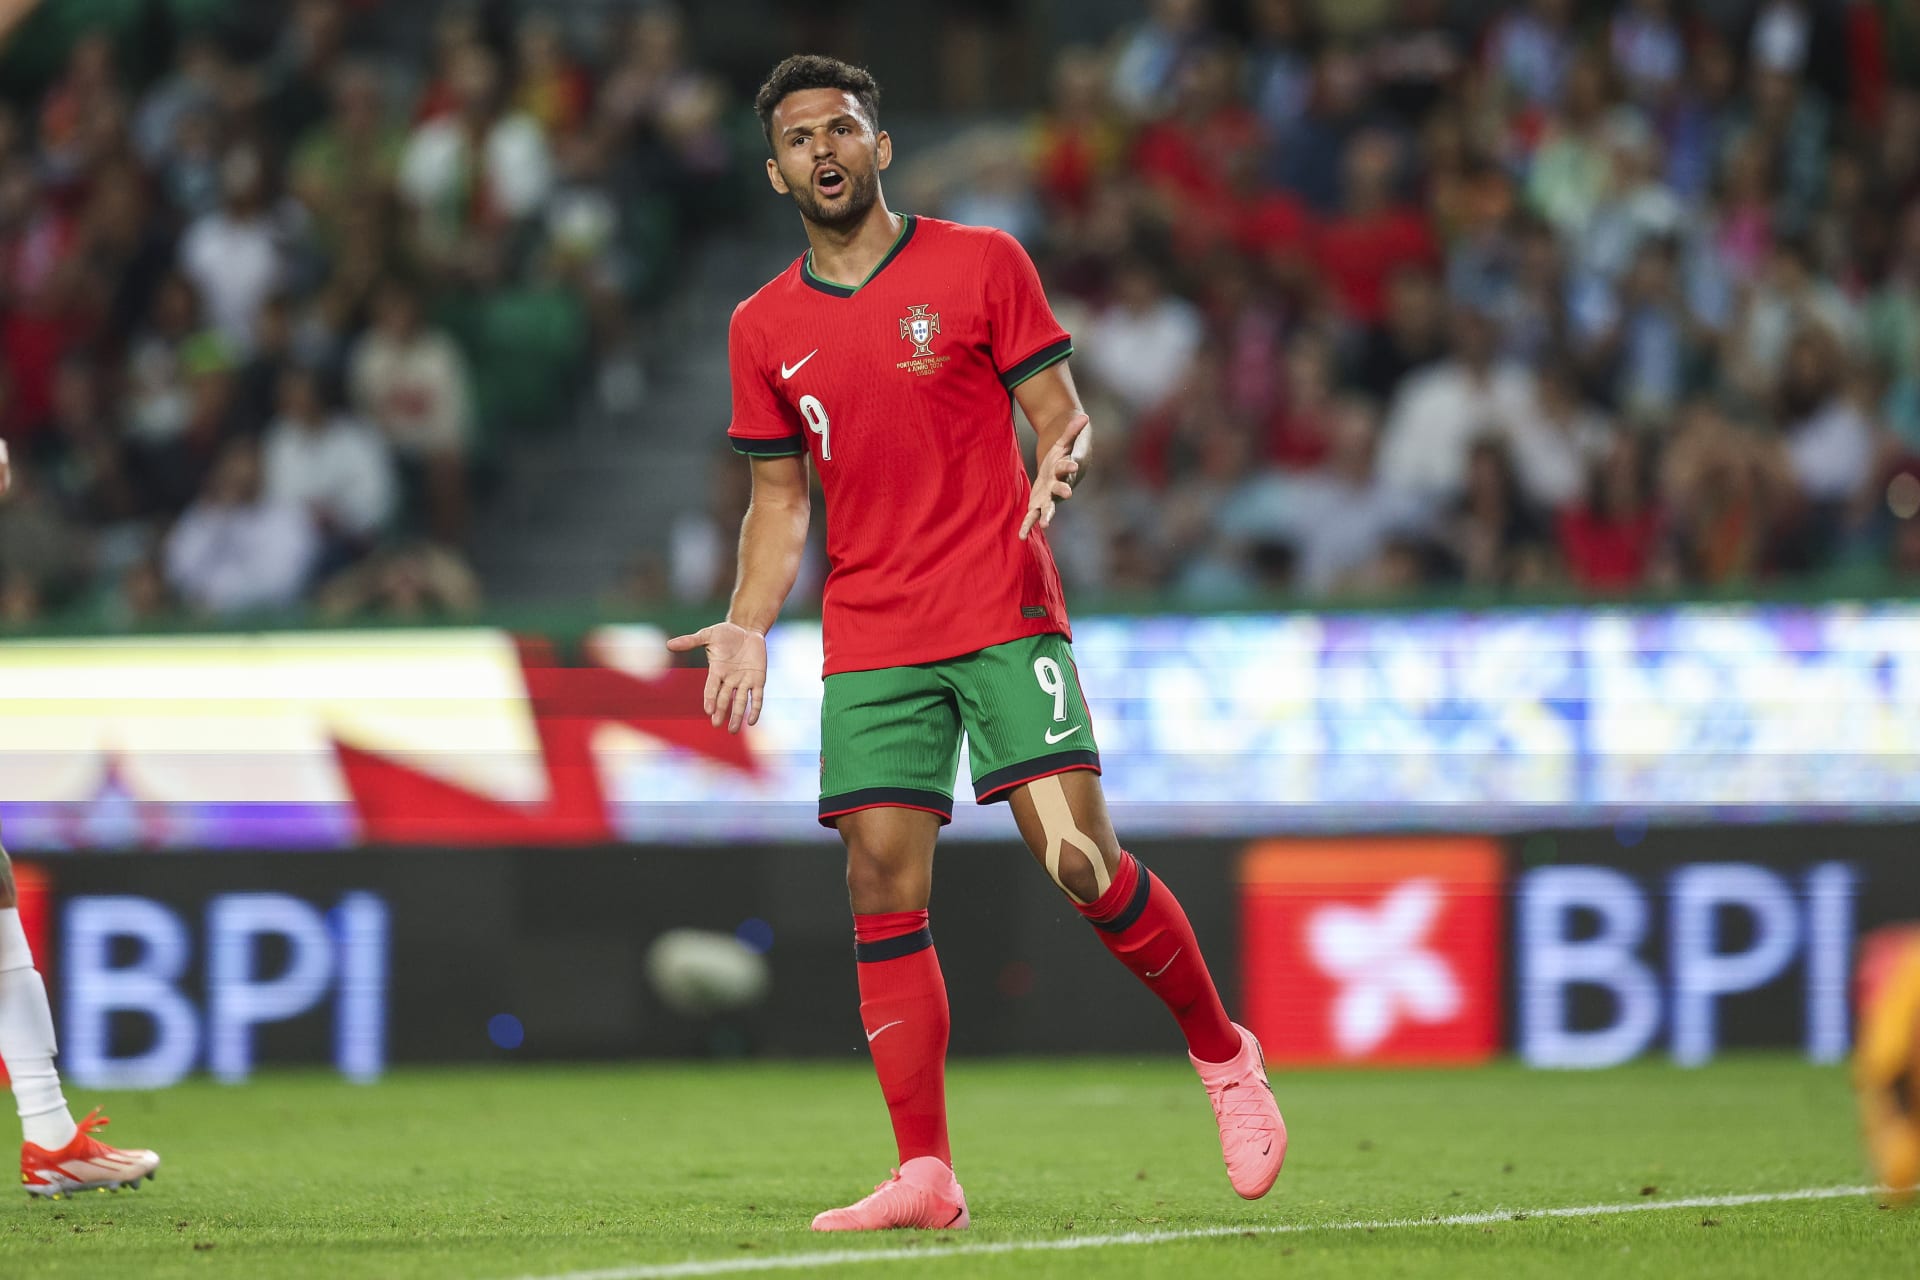 "لحظة من اليورو".. رجل أمن يتسبب بإصابة لاعب منتخب البرتغال